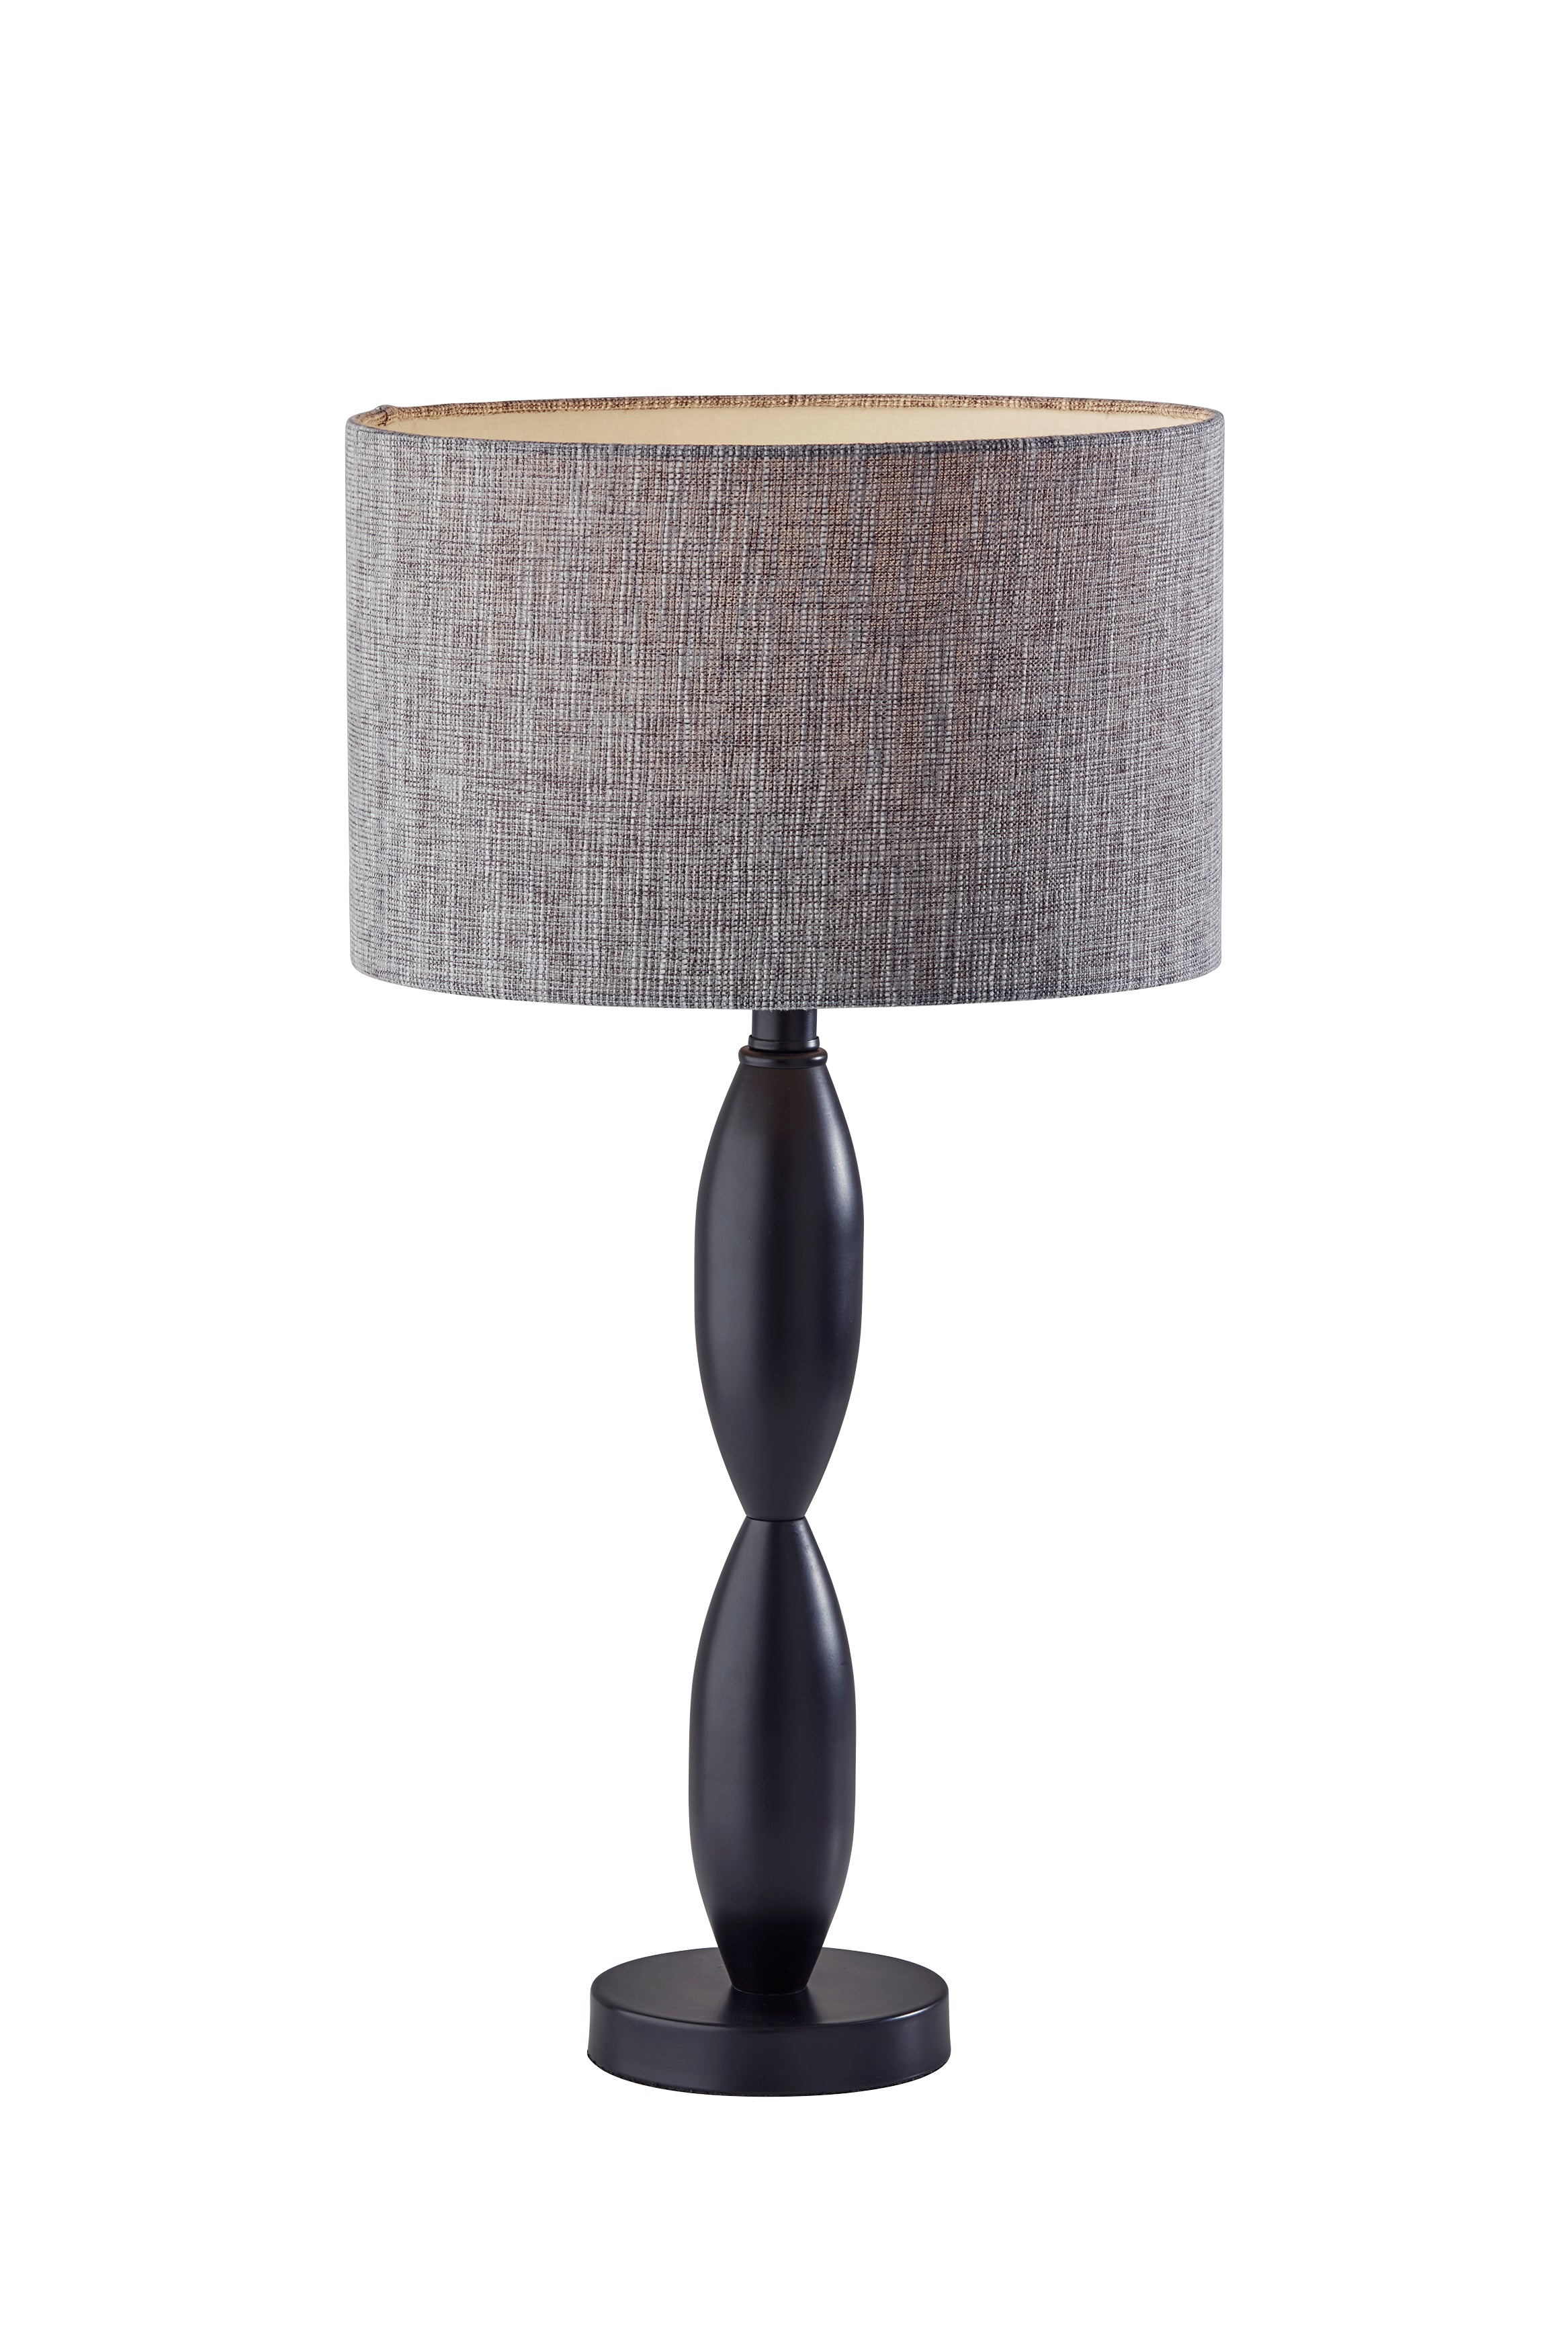 LANCE Lampe sur table Noir - 1602-01 | ADESSO